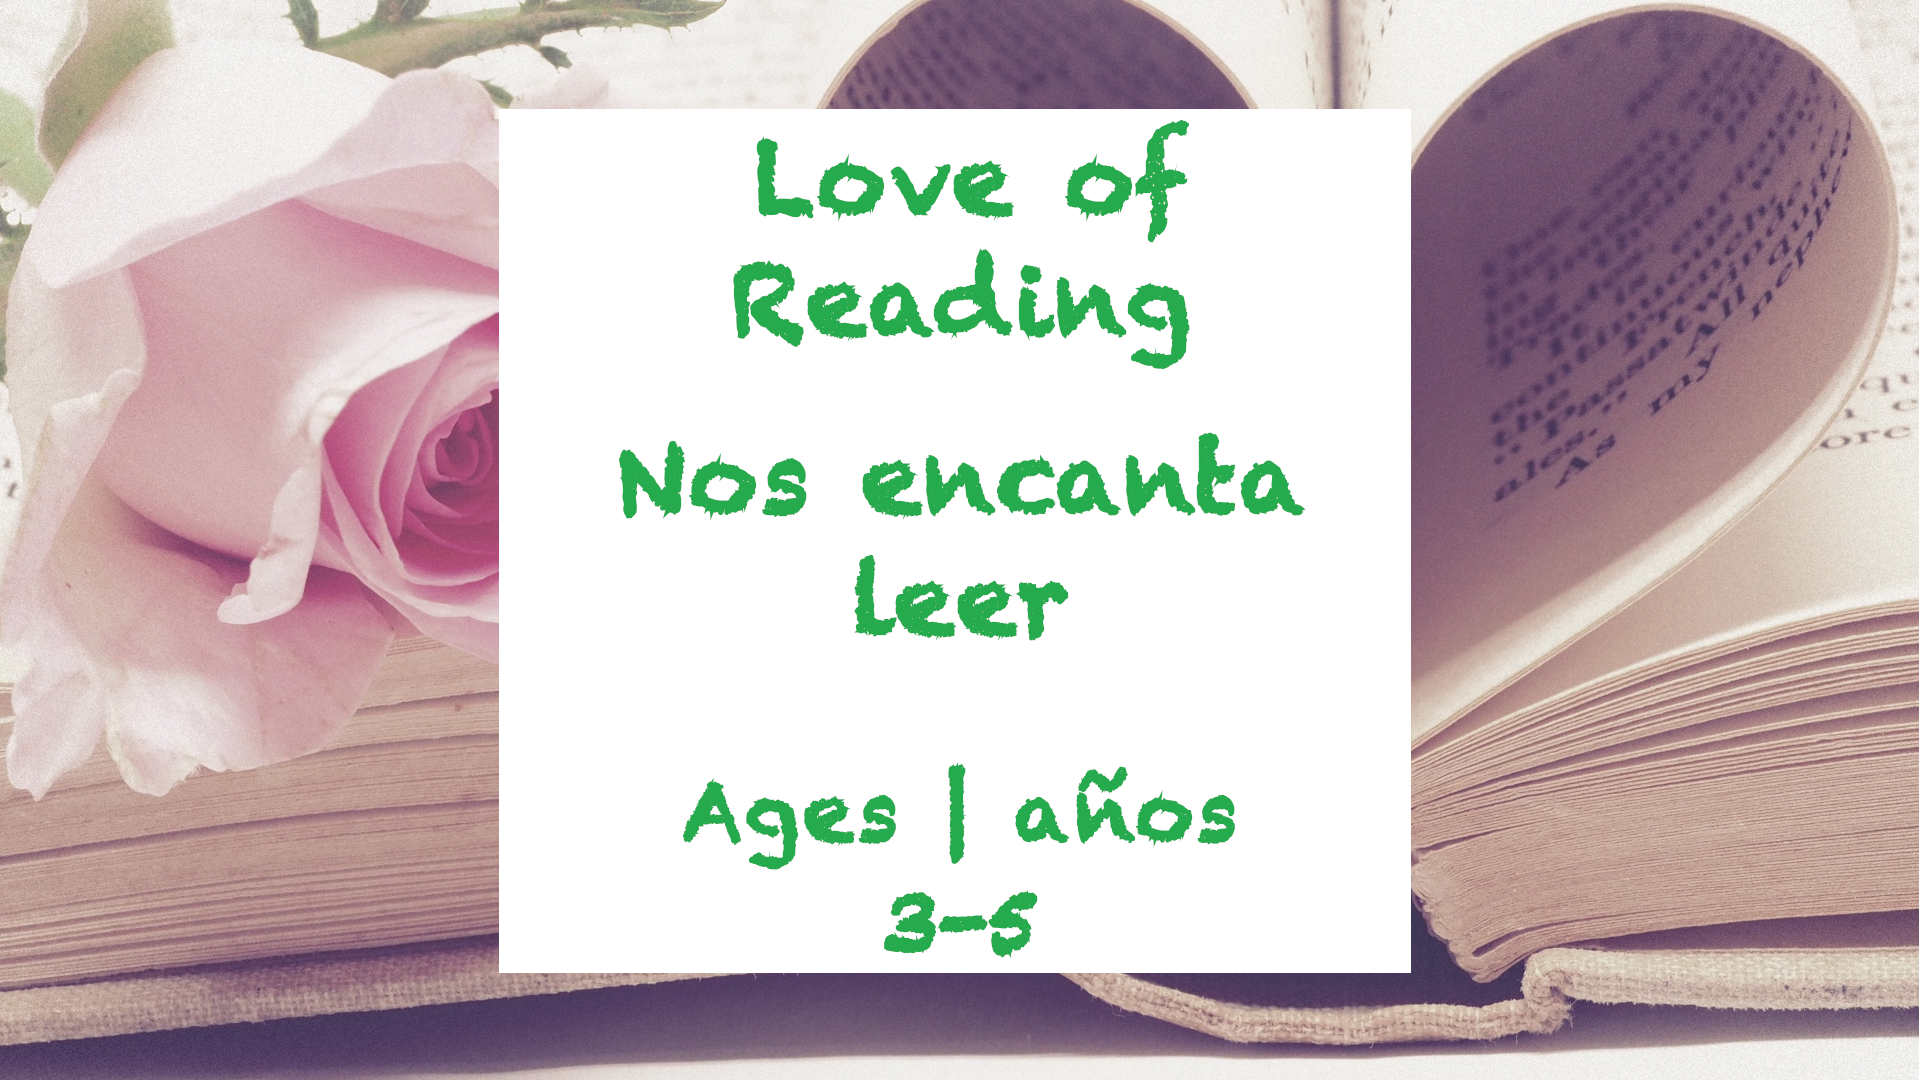 Semana 27 Tarjeta de amor a la lectura Edades 3-5